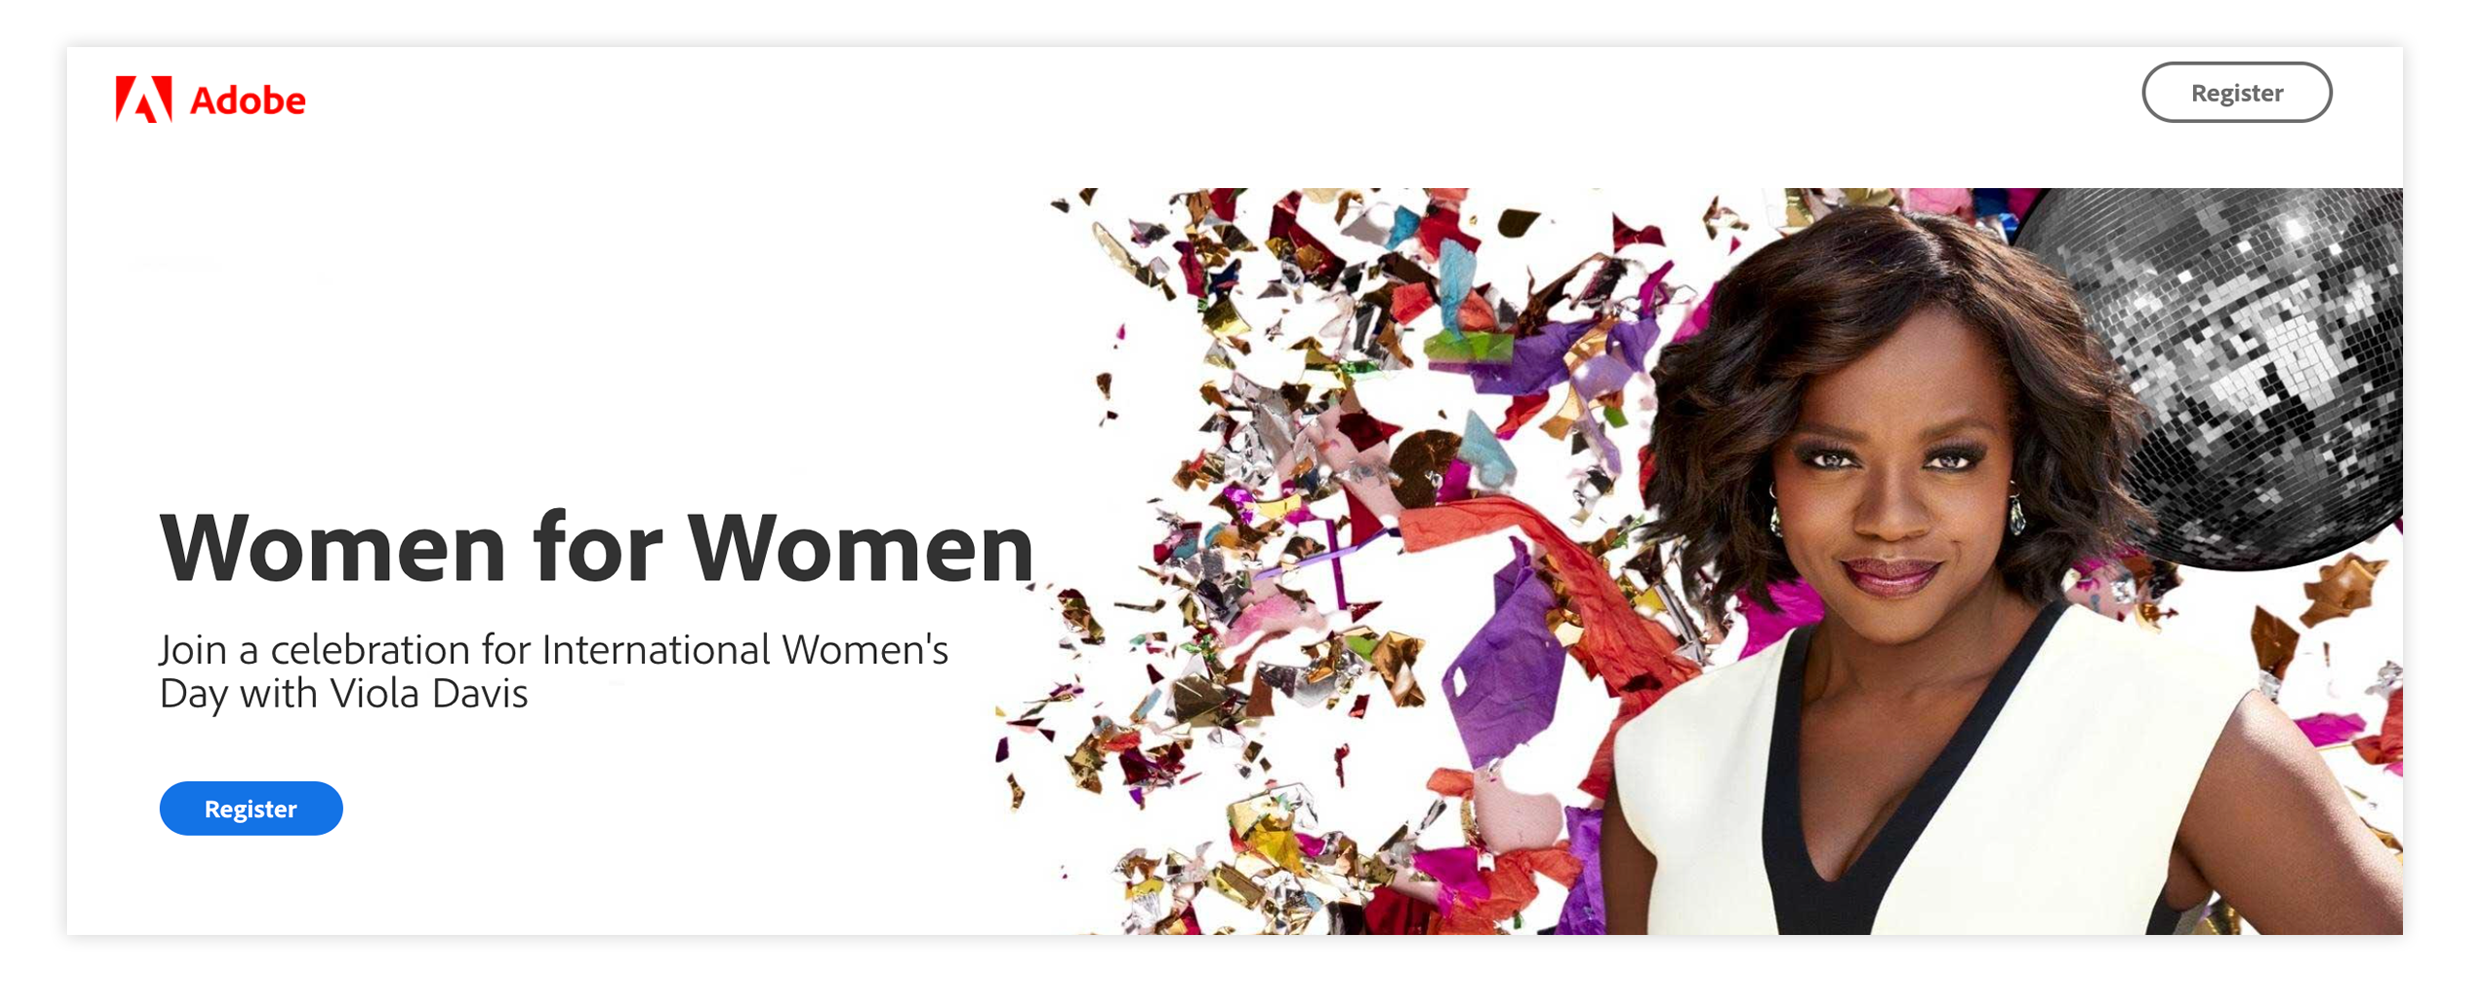 Adobe Women for Women Event